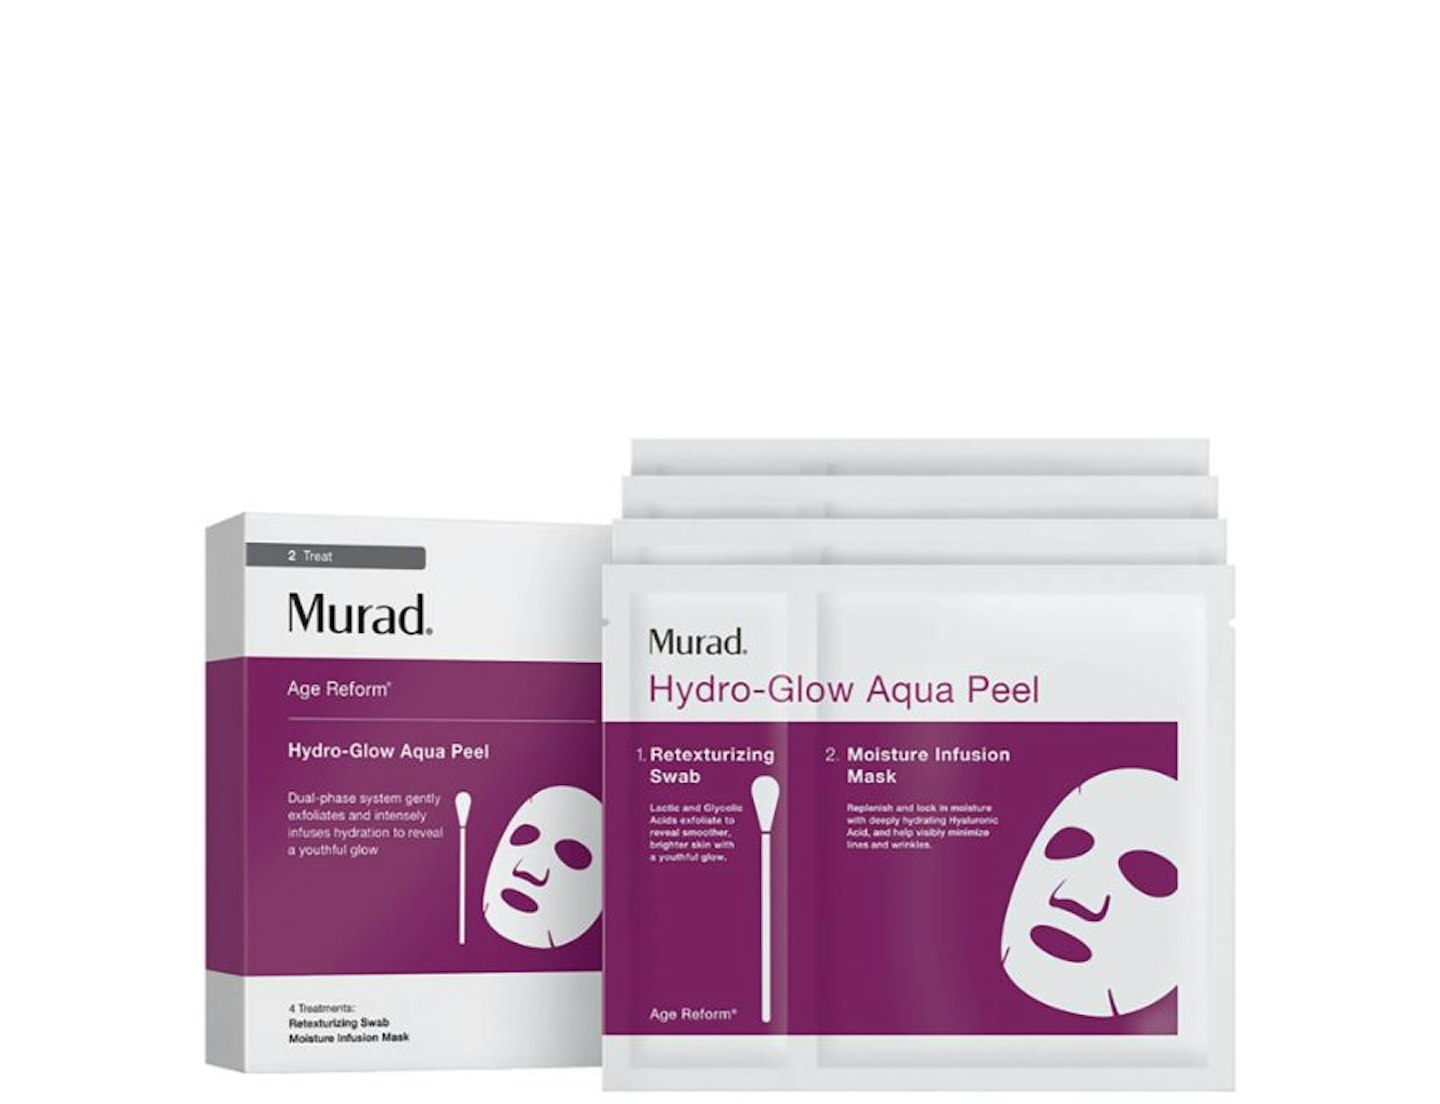 Murad Hydro-Glow Aqua Peel (4 pack), Lookfantastic.com, £40.00